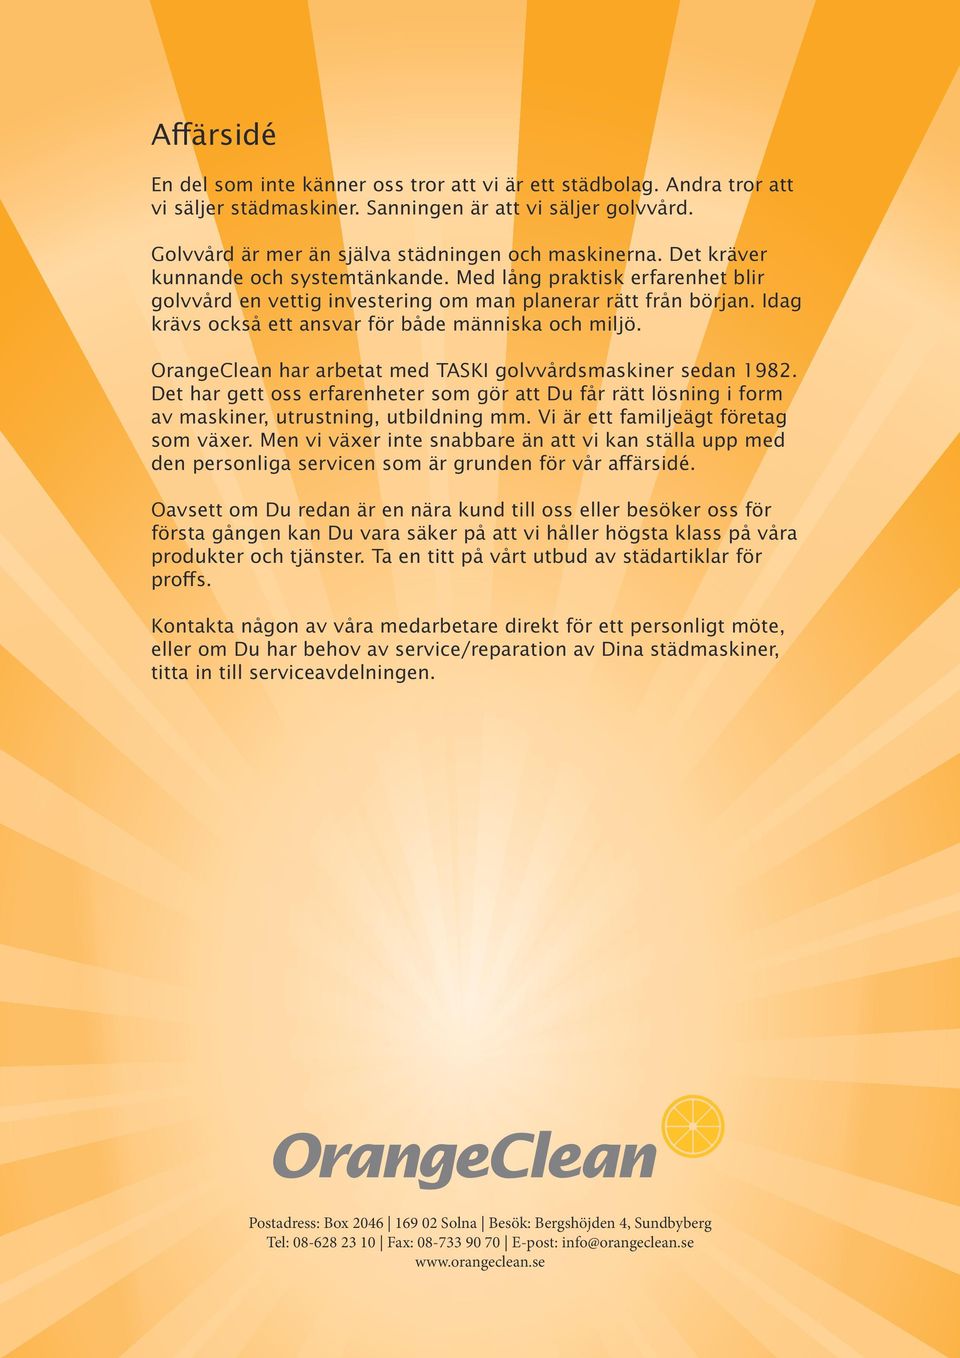 OrangeClean har arbetat med TASKI golvvårdsmaskiner sedan 1982. Det har gett oss erfarenheter som gör att Du får rätt lösning i form av maskiner, utrustning, utbildning mm.